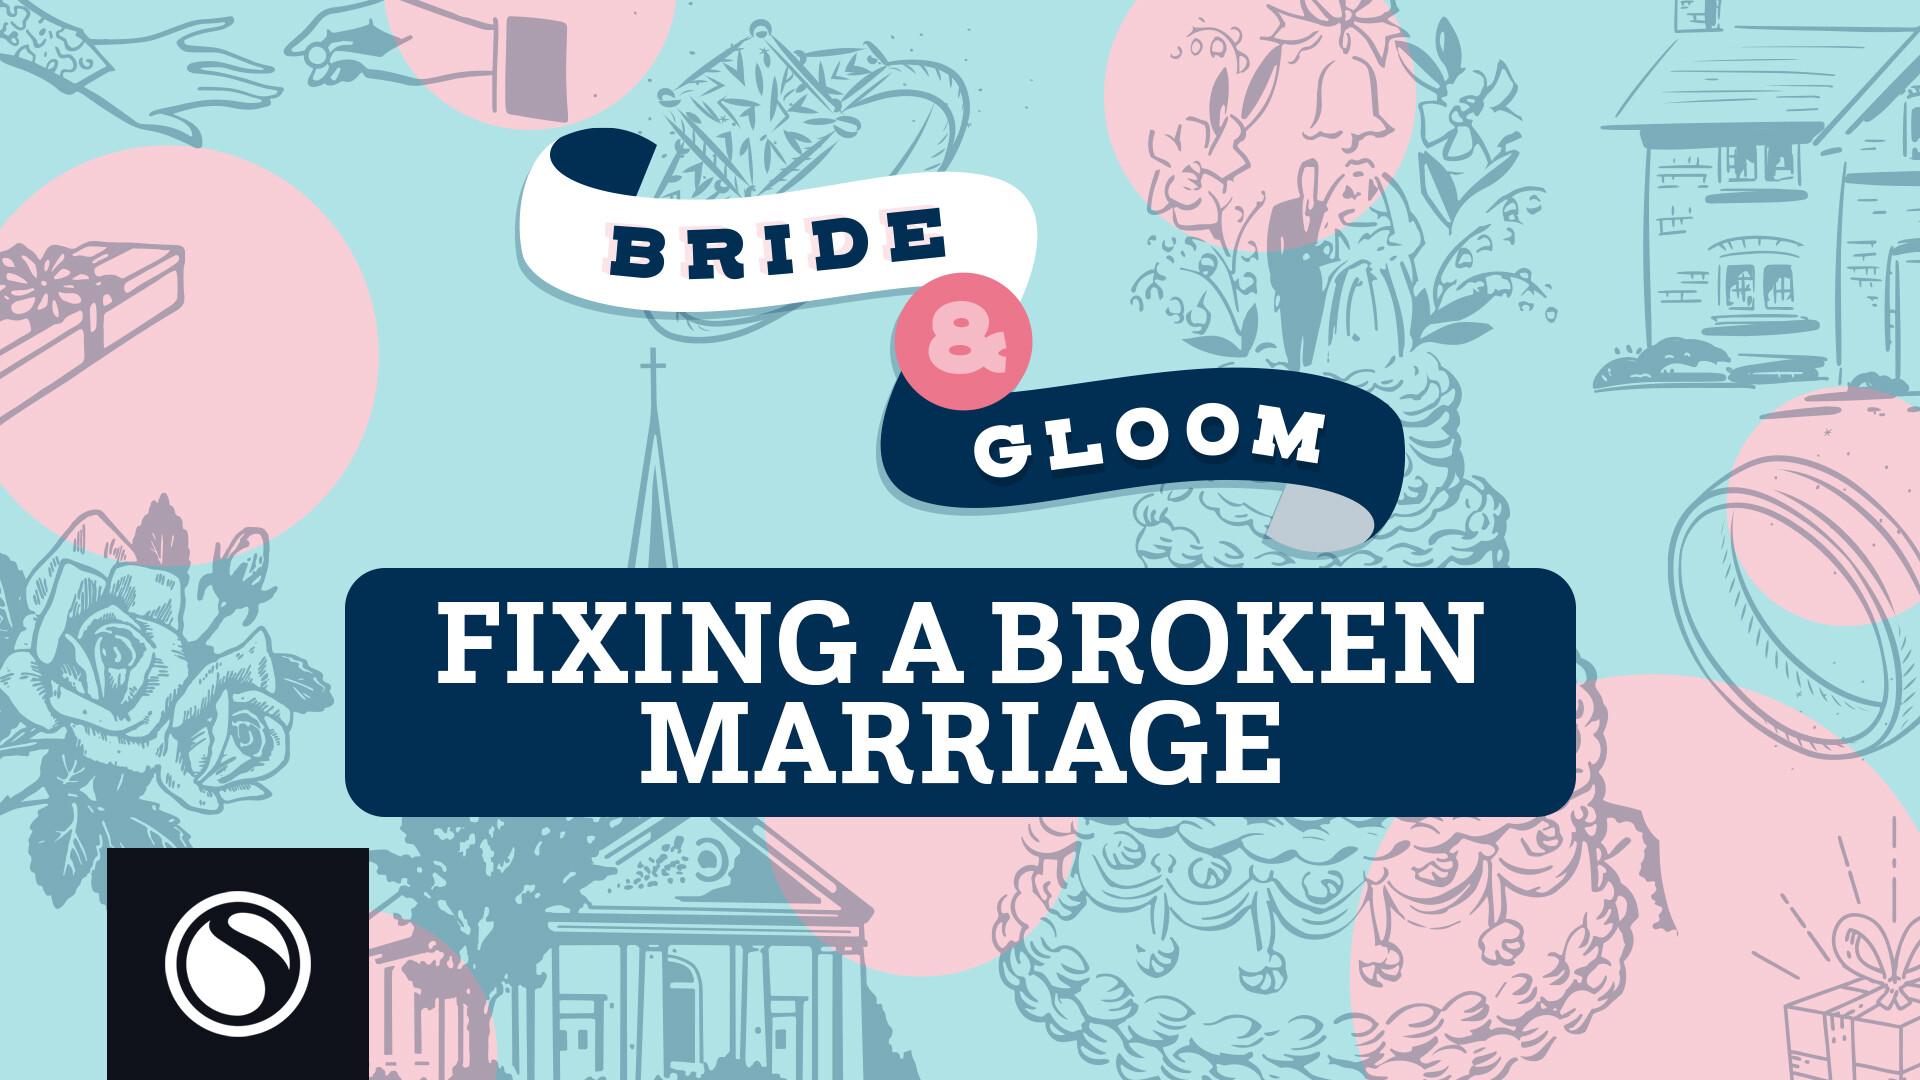 Watch Bride & Gloom - Fixing a Broken Marriage